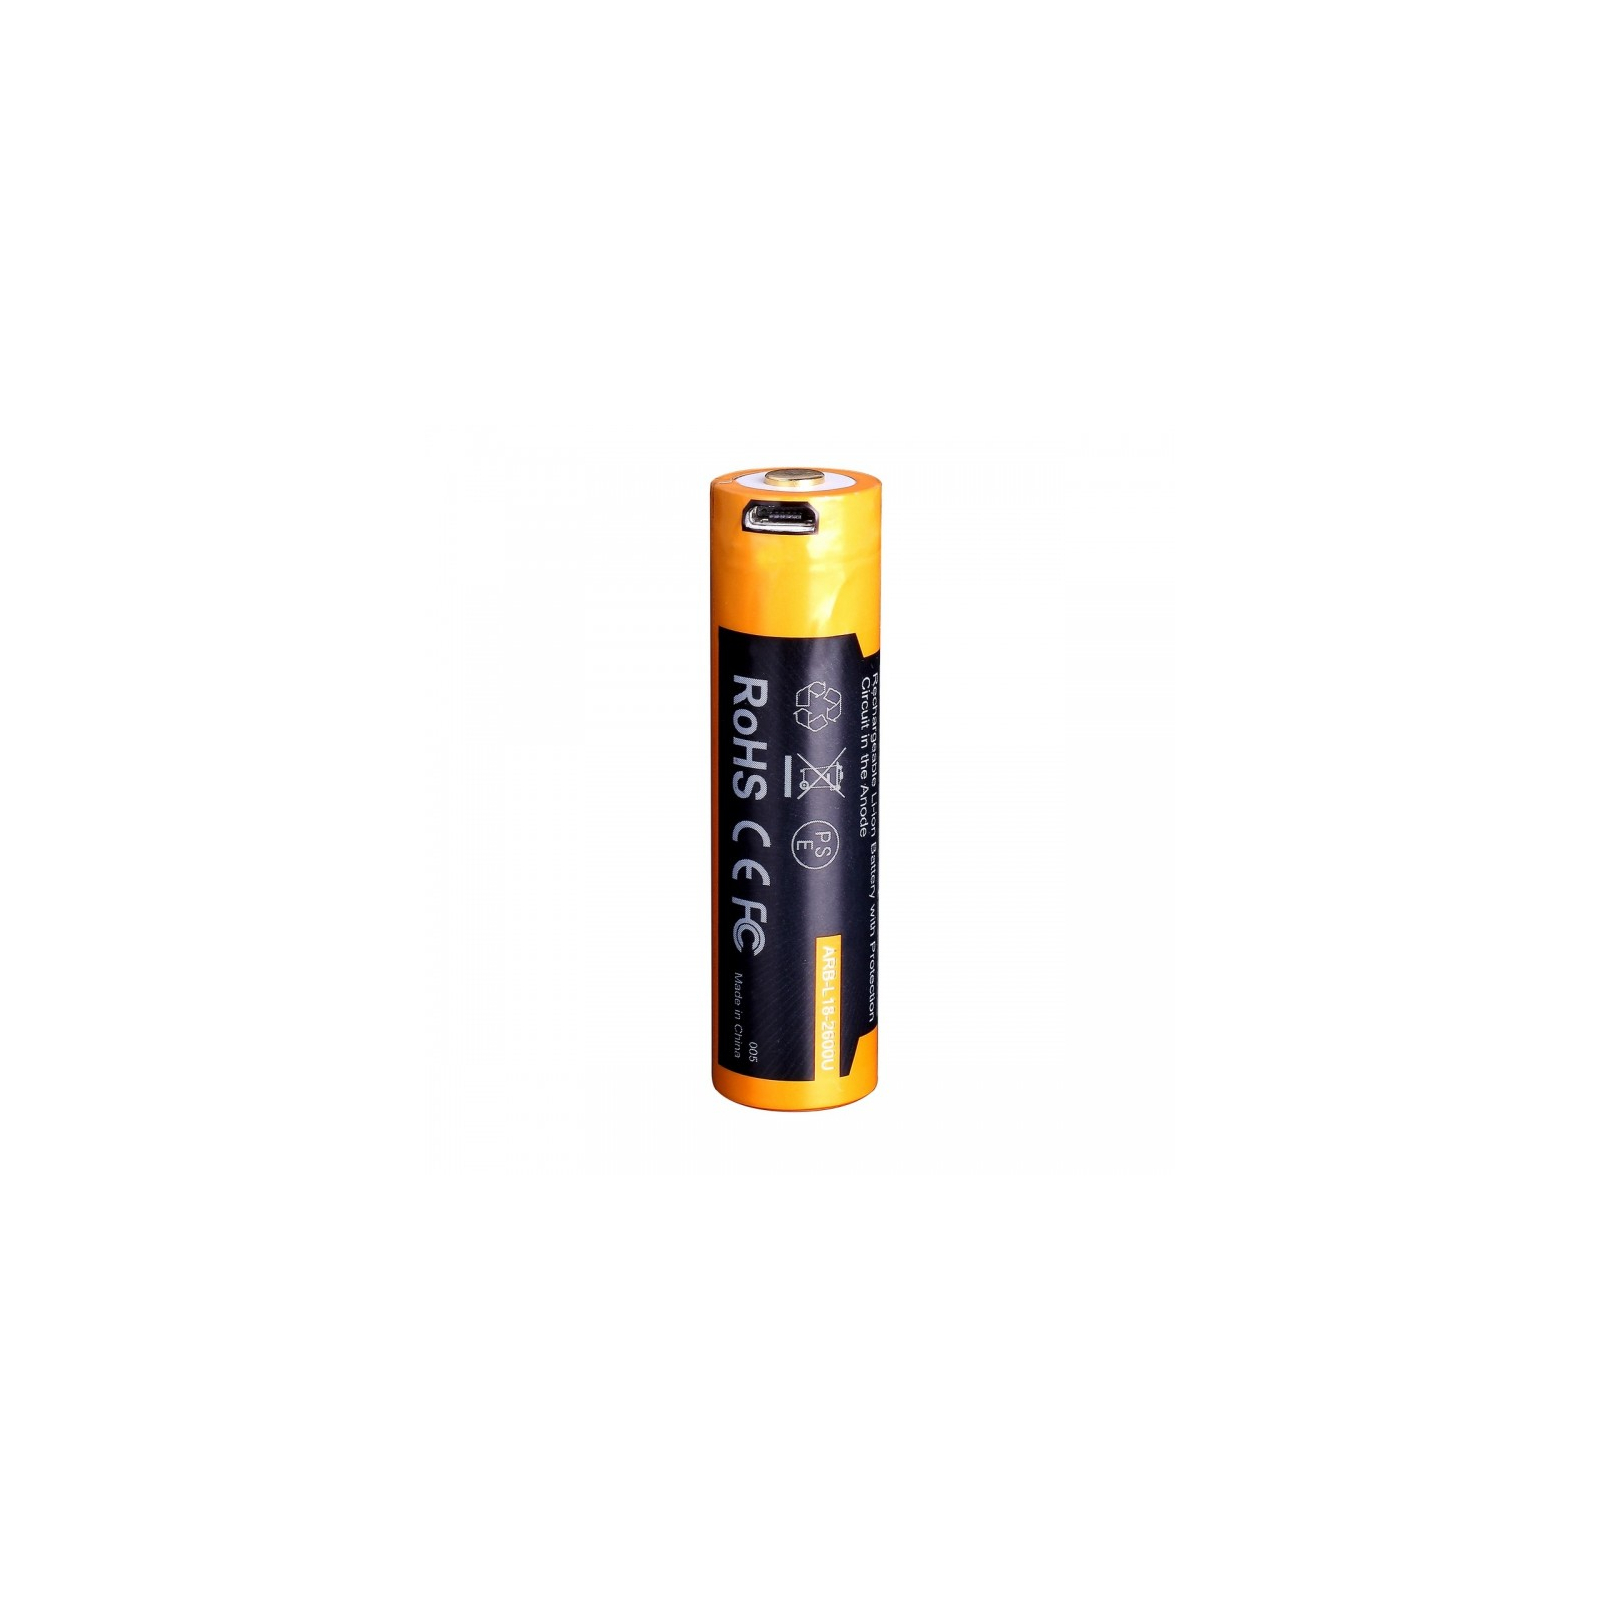 Аккумулятор Fenix 18650  2600 mAh micro usb зарядка (ARB-L18-2600U) изображение 4